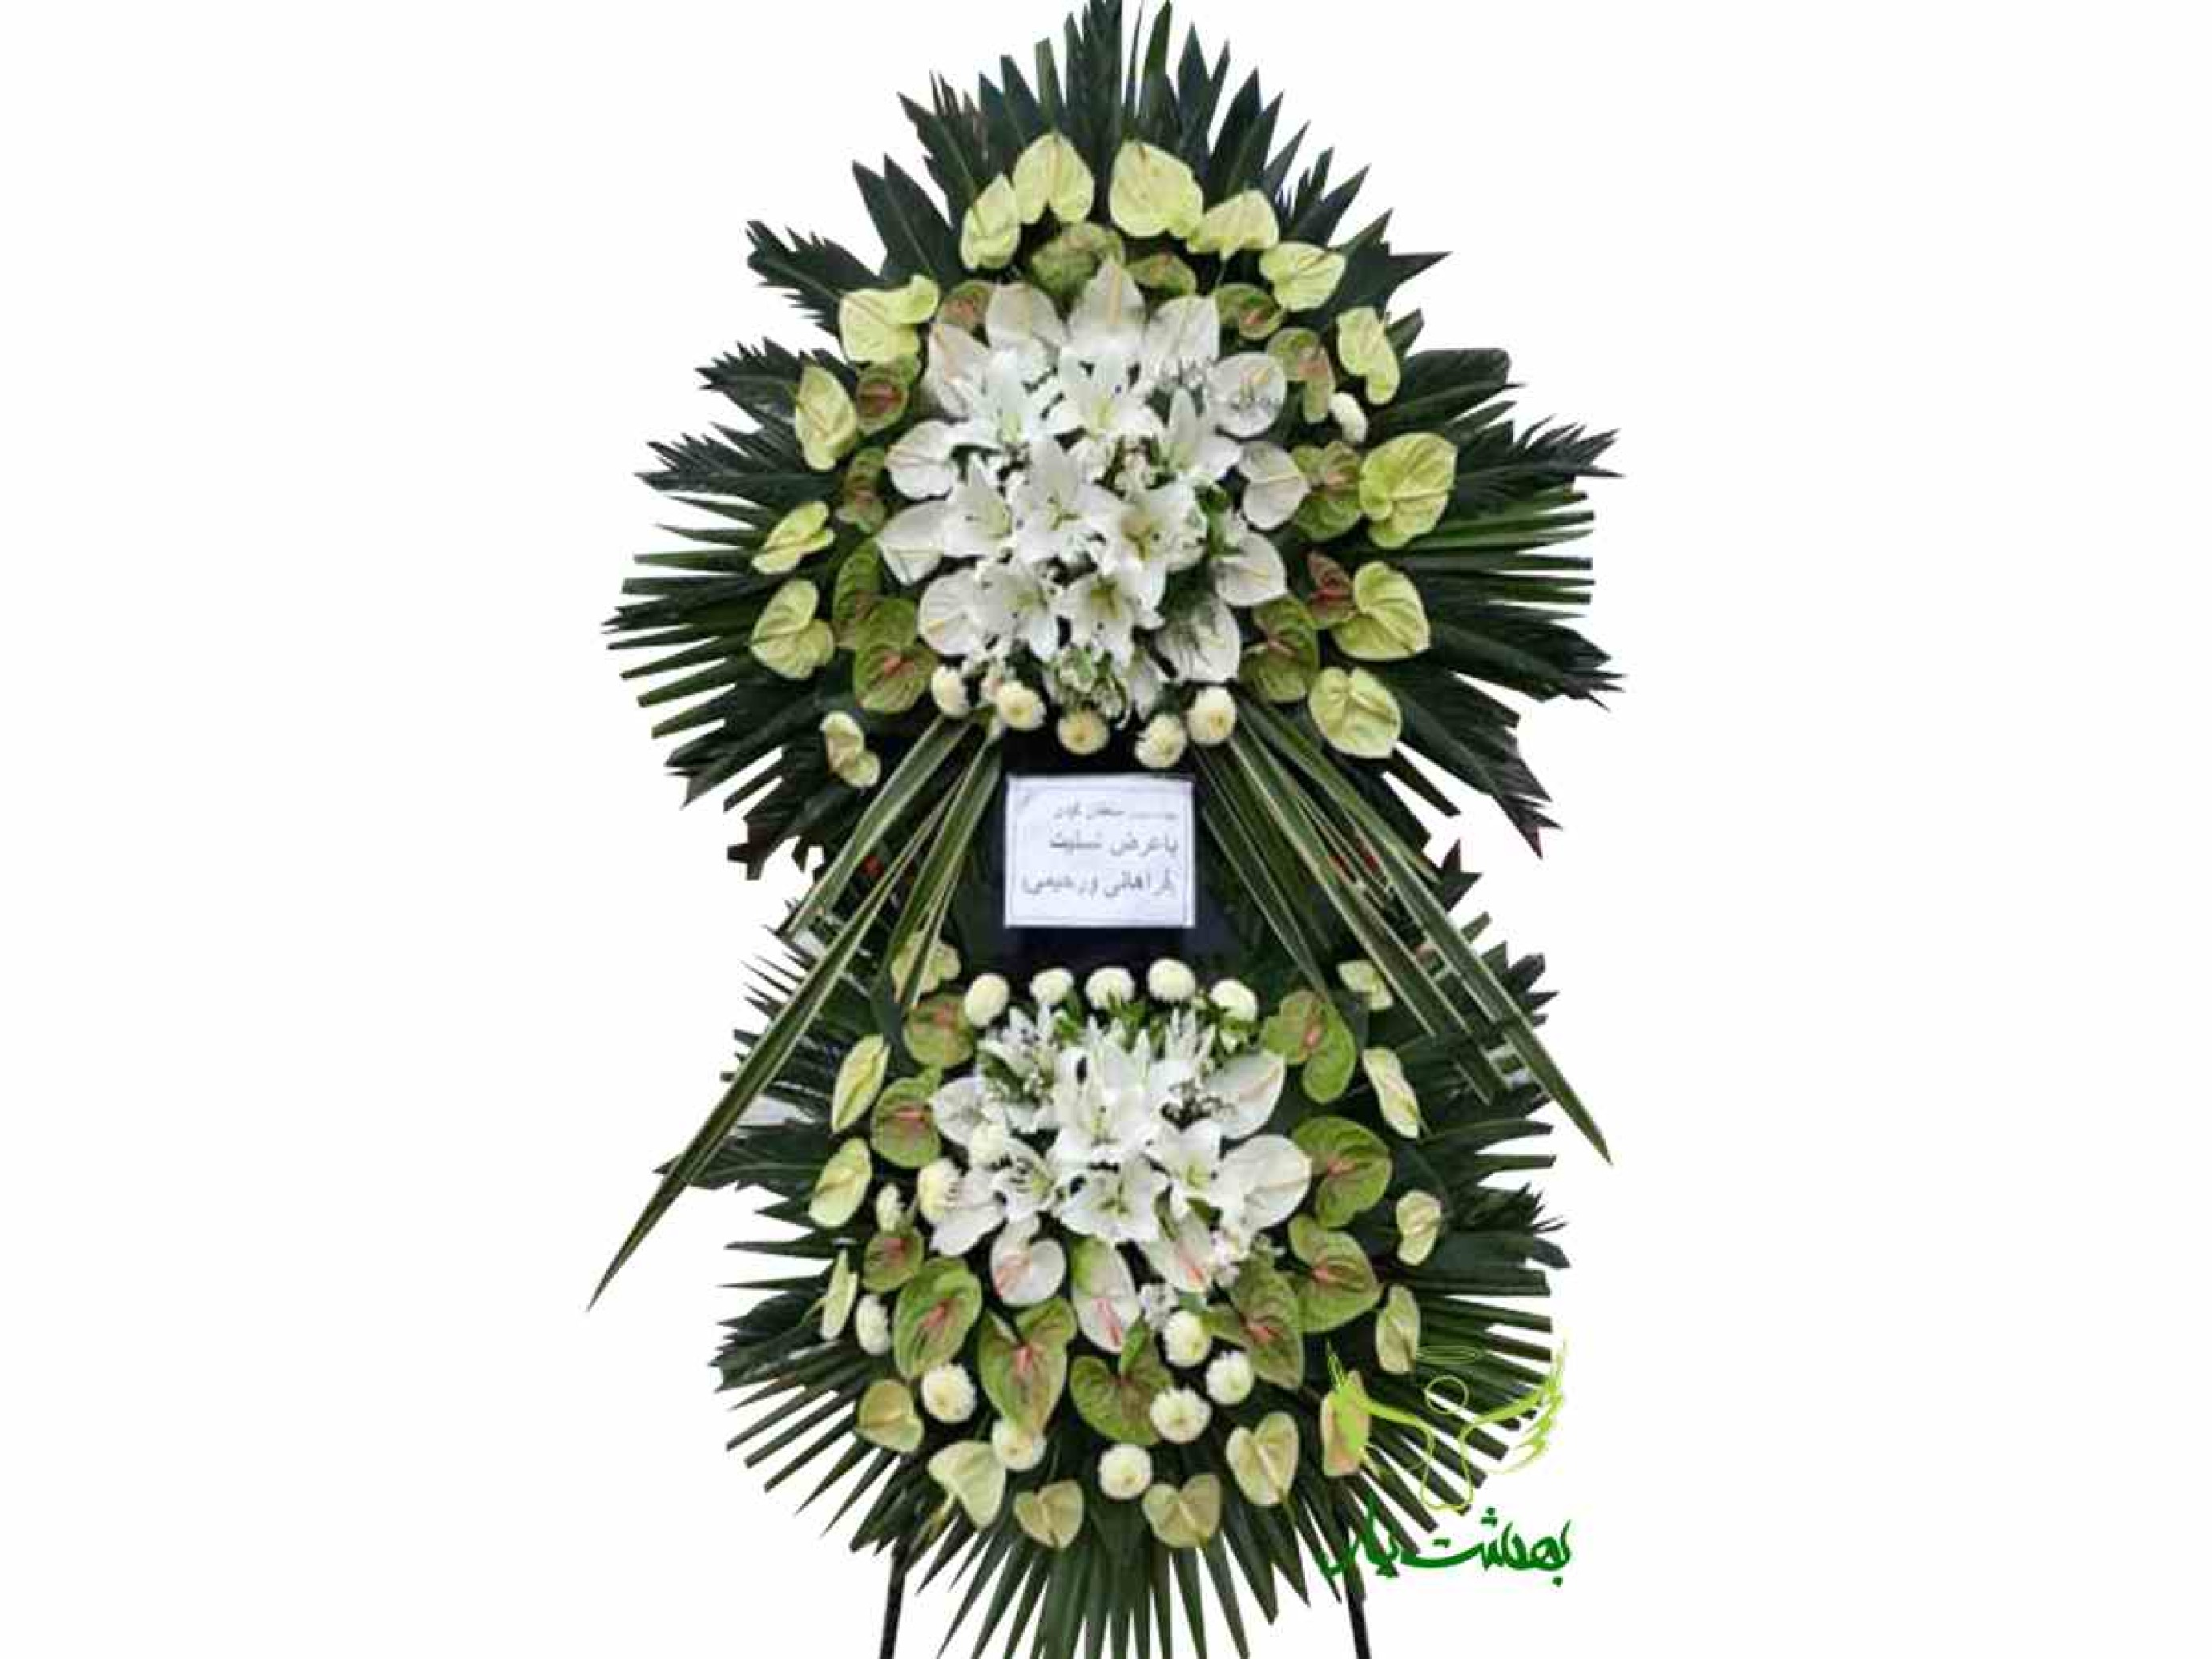  خرید آنلاین تاج گل تسلیت برای مراسم بهشت زهرا 